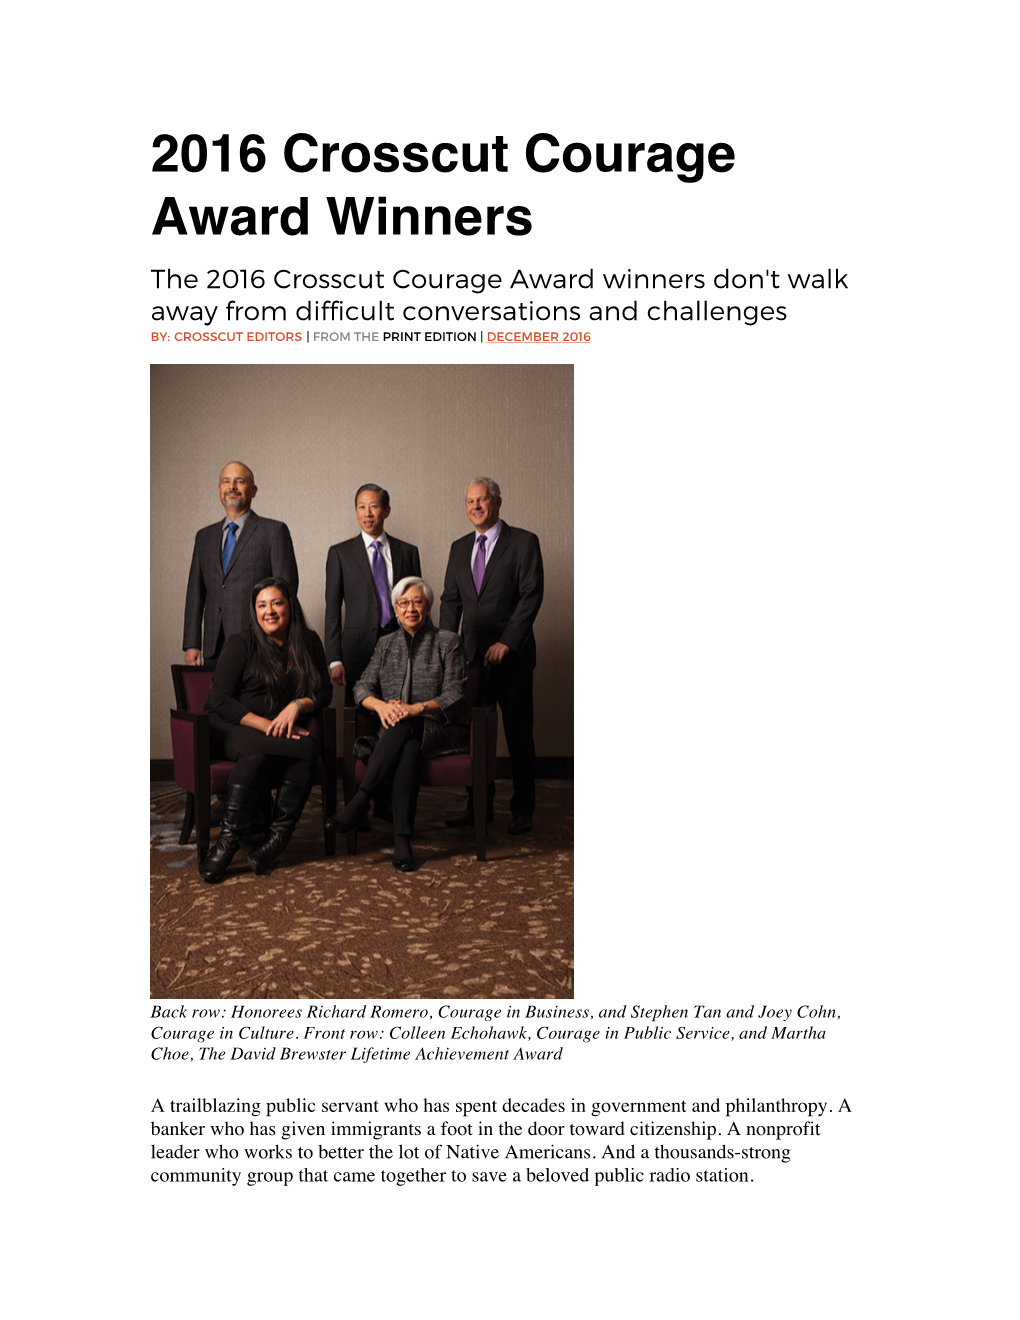 2016 Crosscut Courage Award Winners